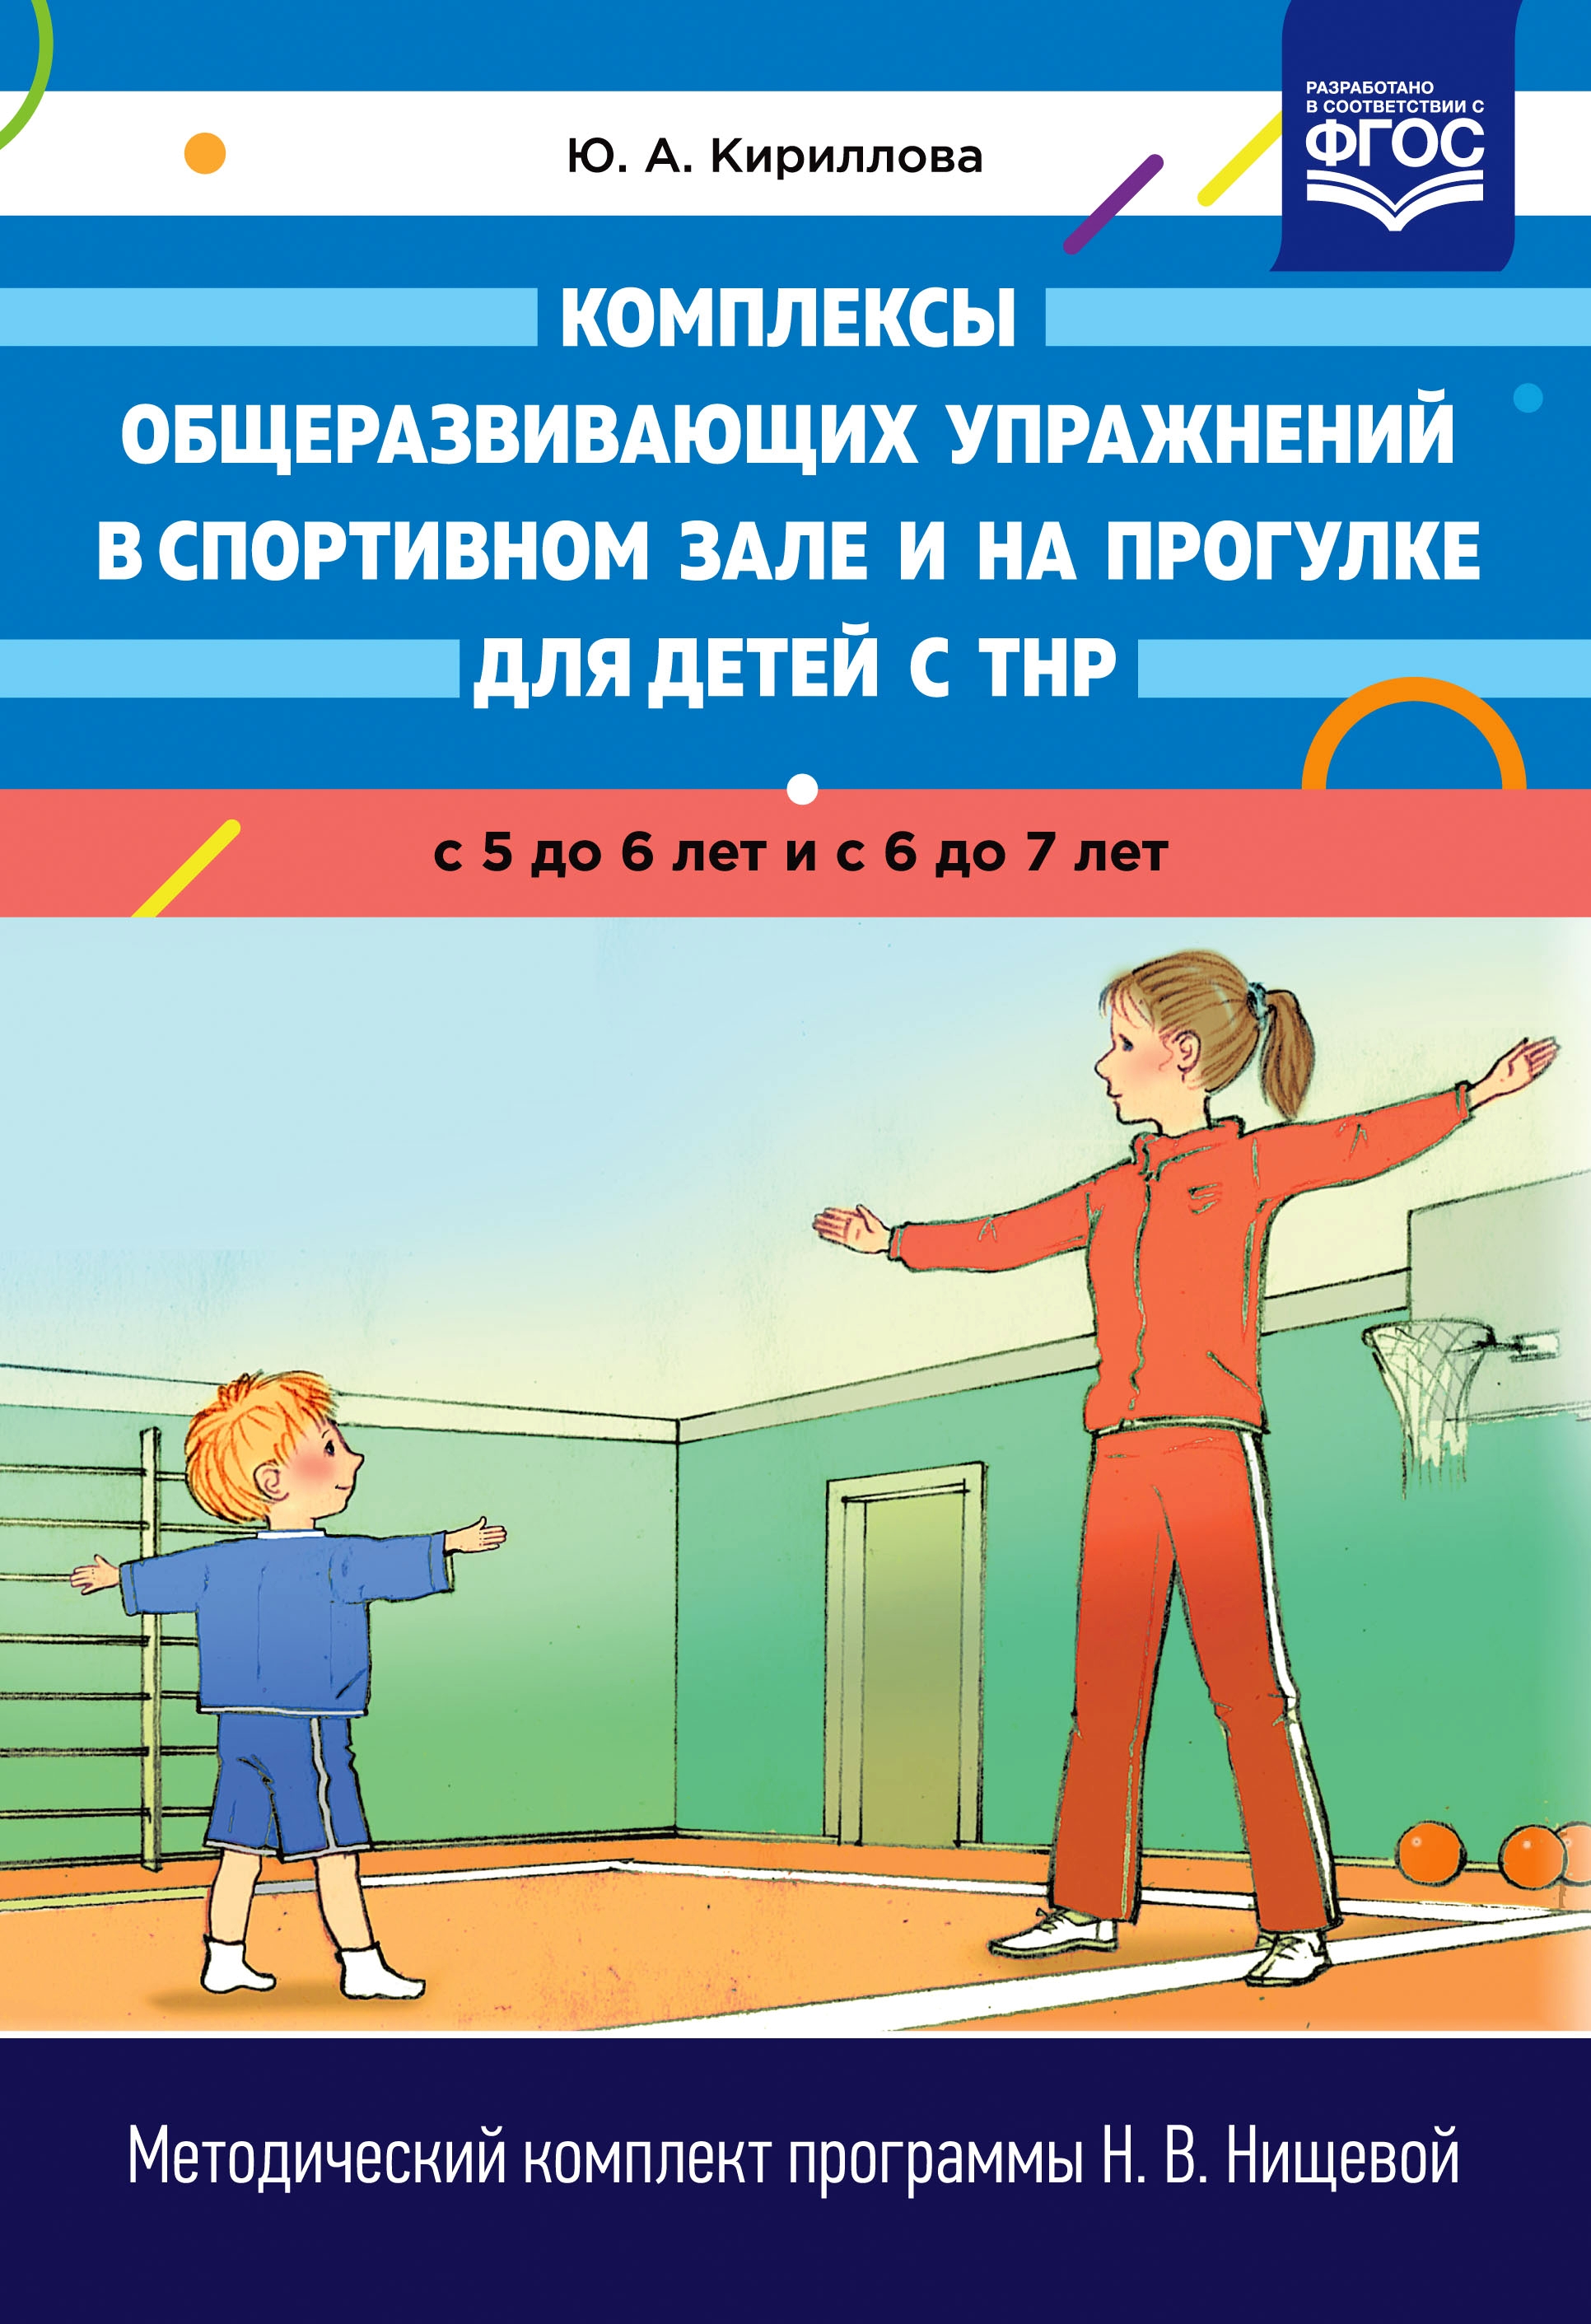 фото Кириллова. комплексы общеразвивающих упражнений в спортивном зале и на прогулке для детей детство-пресс